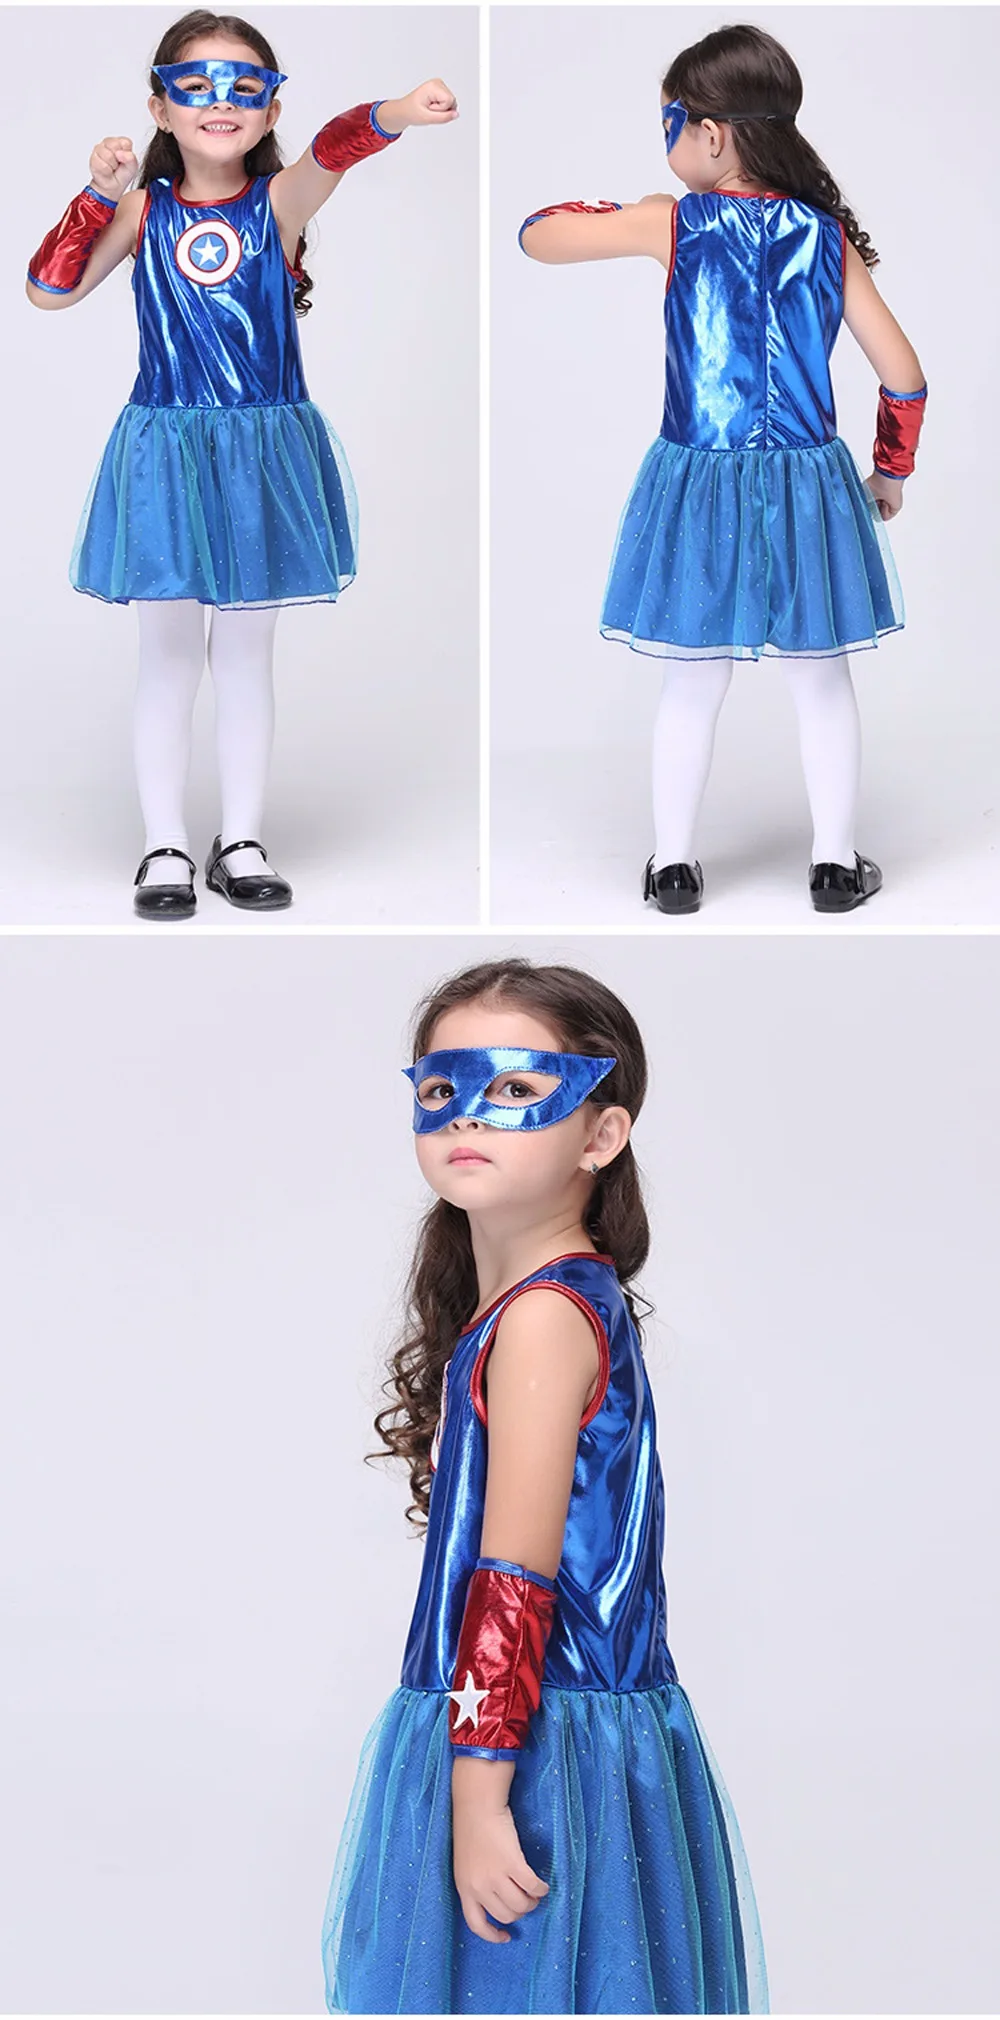 Vevefhuang Обувь для девочек Капитан Америка костюмы прекрасные дети звезда печатных супергерой платье карнавал-маскарад Карнавальная одежда